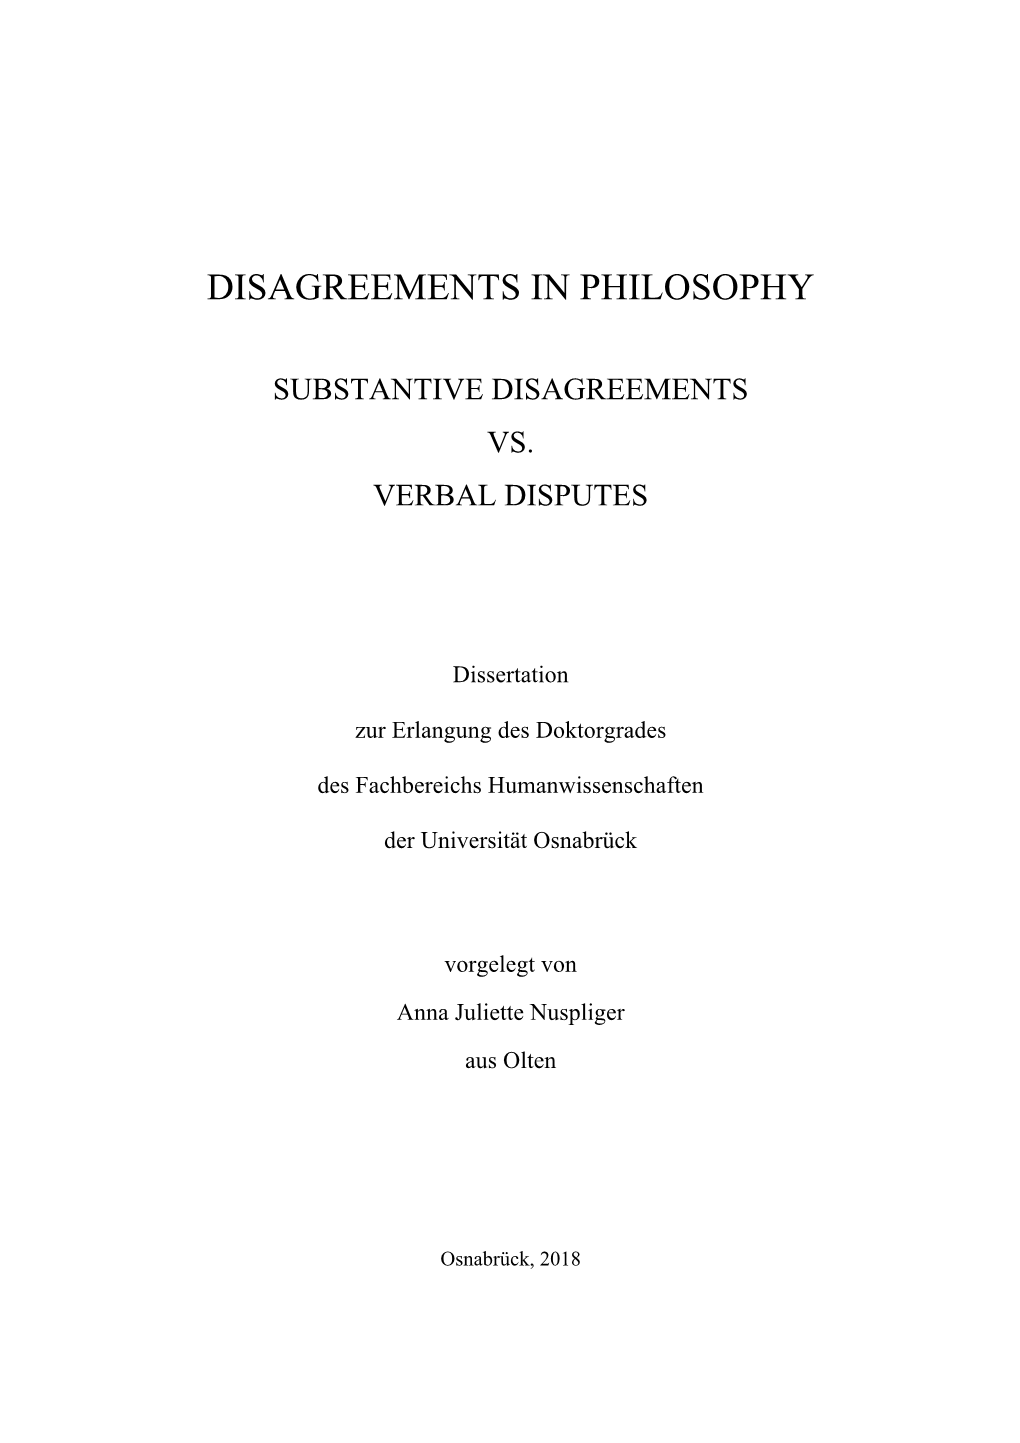 Disagreements in Philosophy